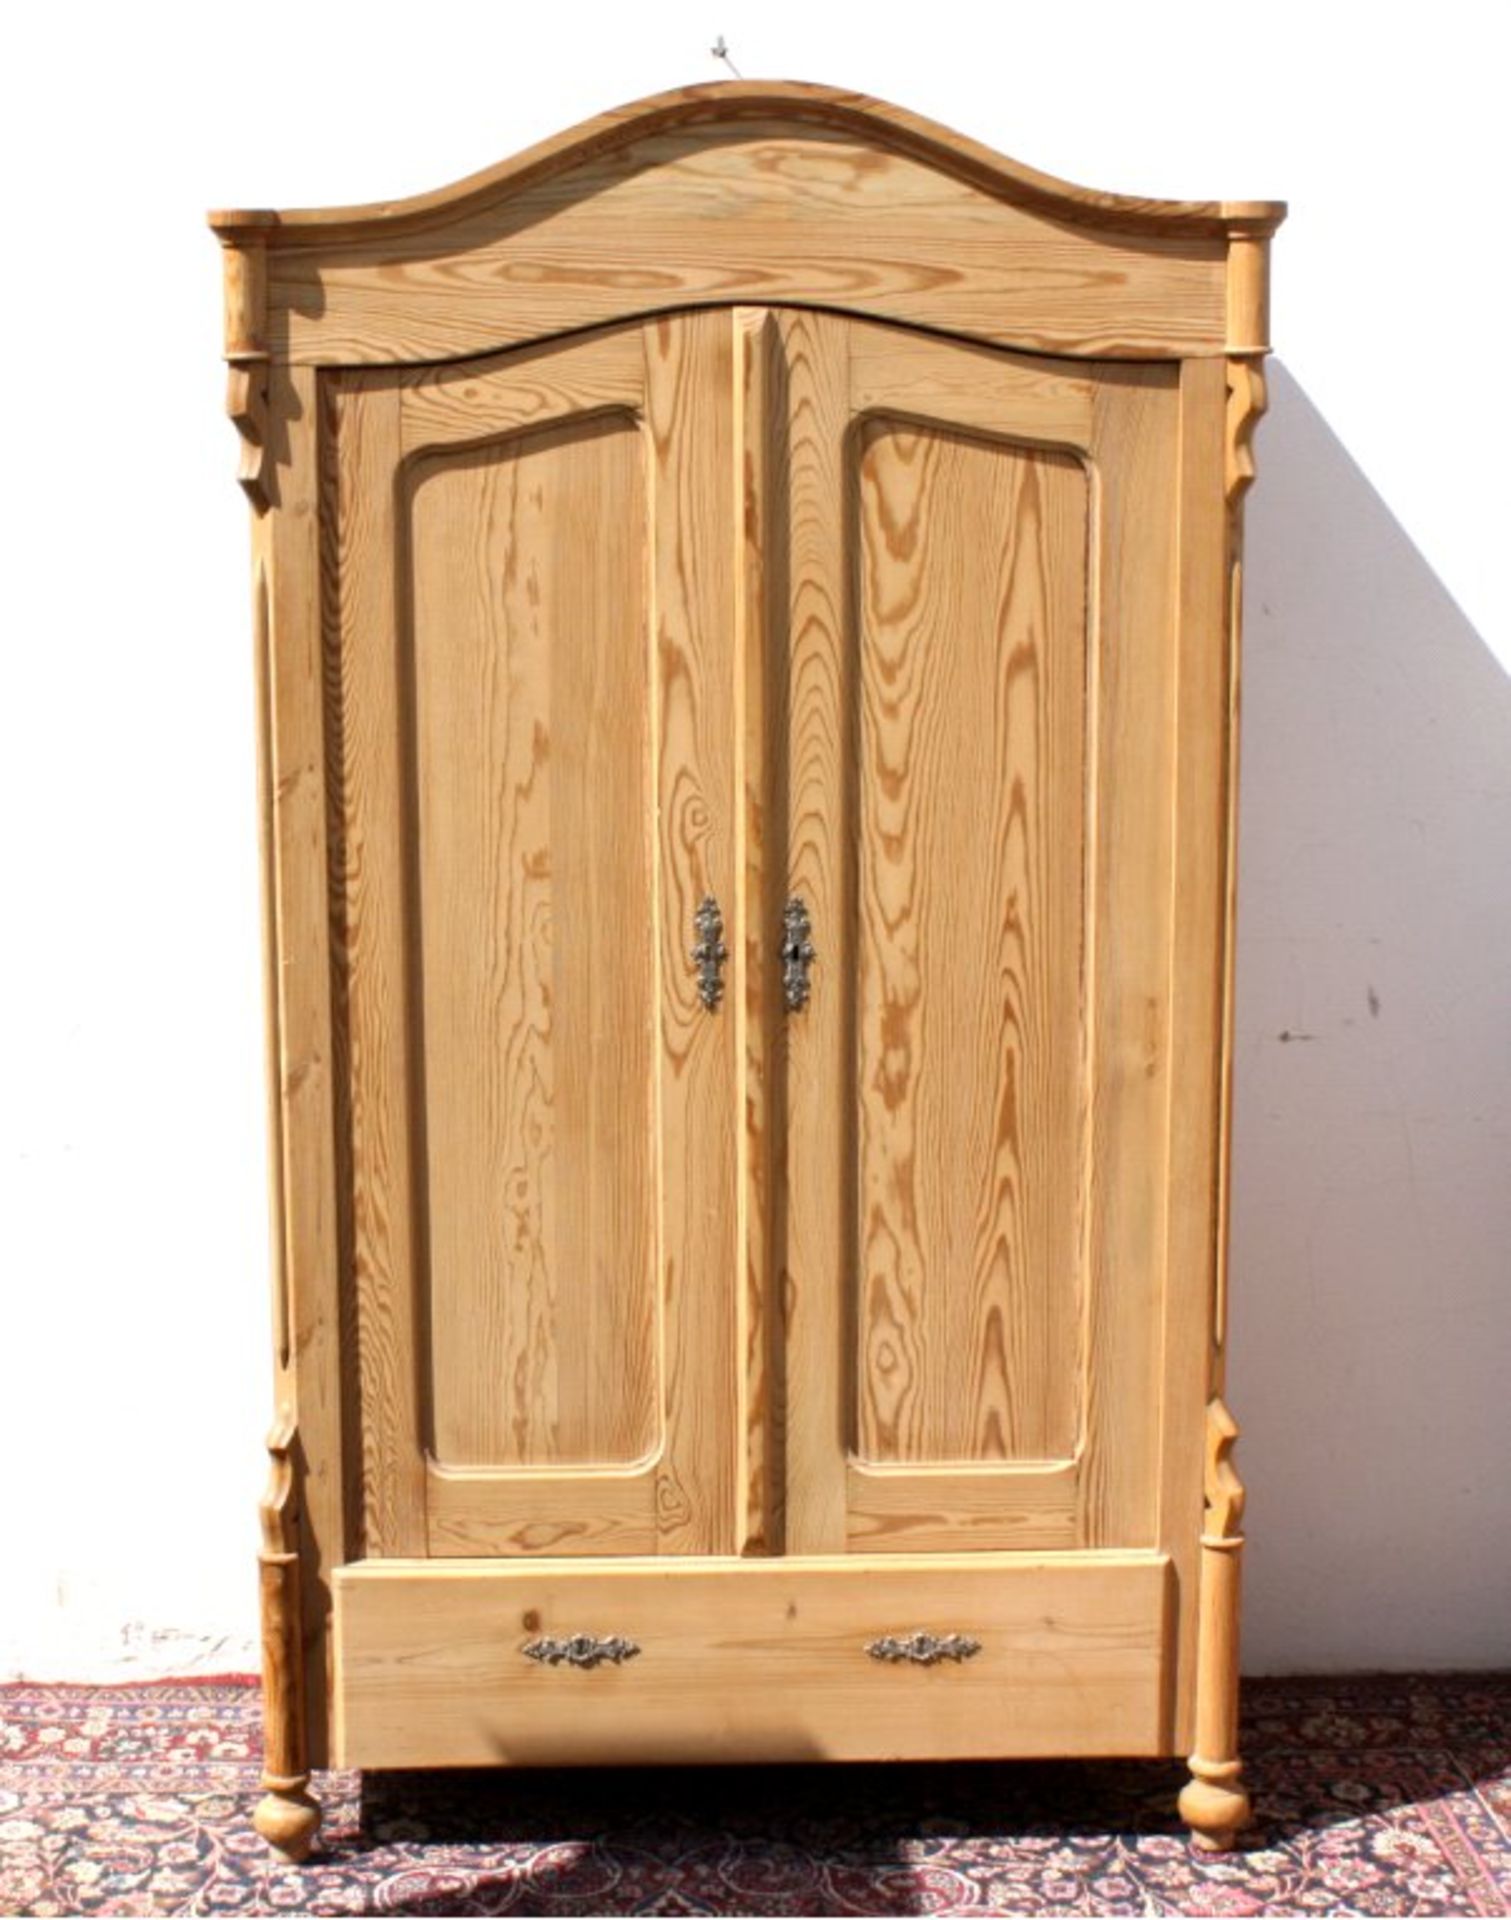 Kleiderschrank um 1900Weicholz massiv, 2 Türen und 1 Schublade, restauriert,ca.183x104x44 cm.